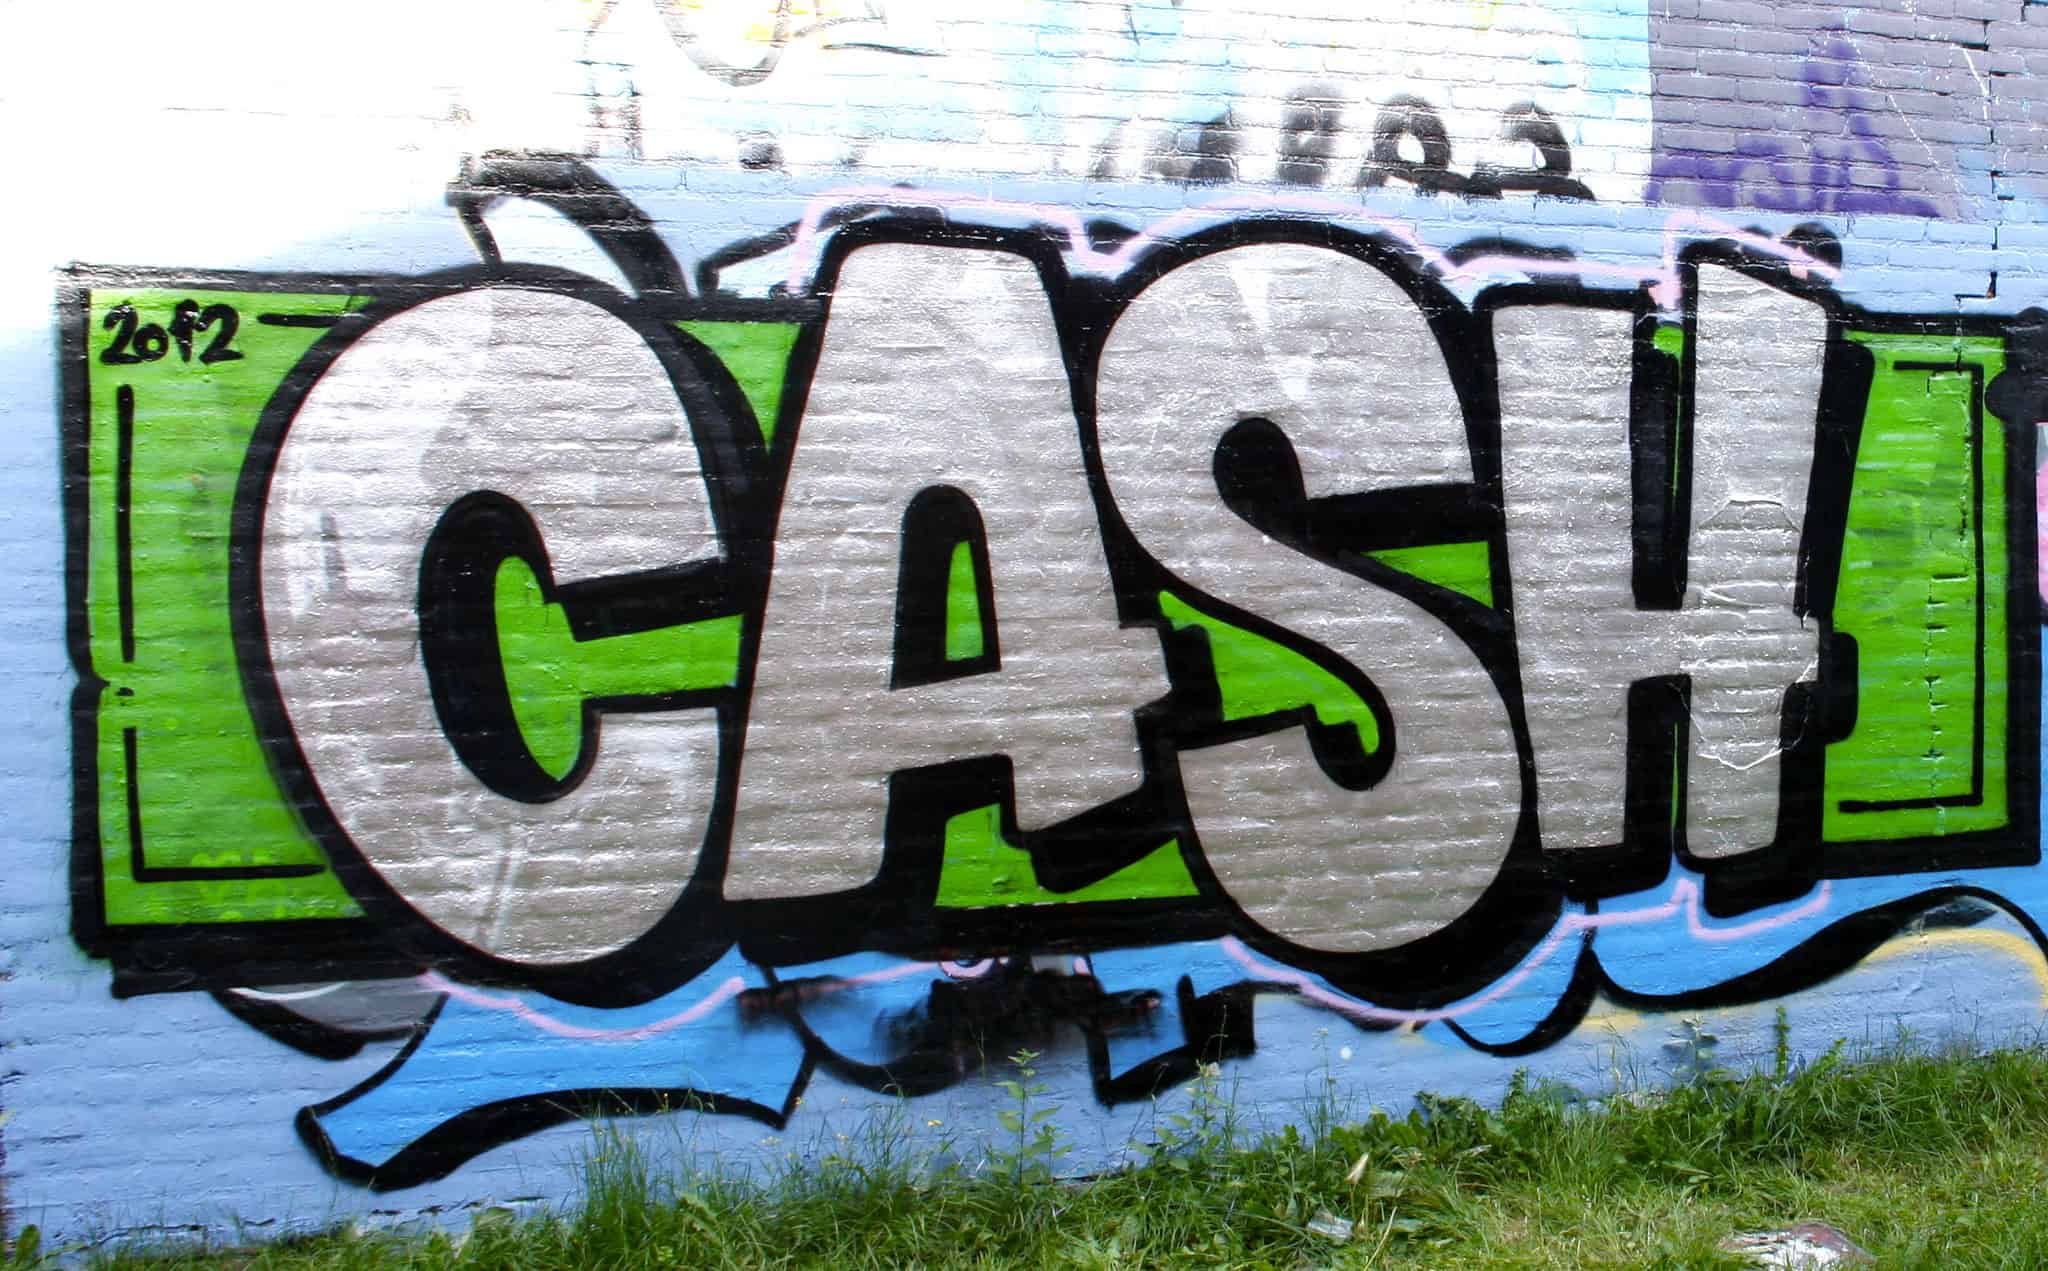 Cash street arts graffiti